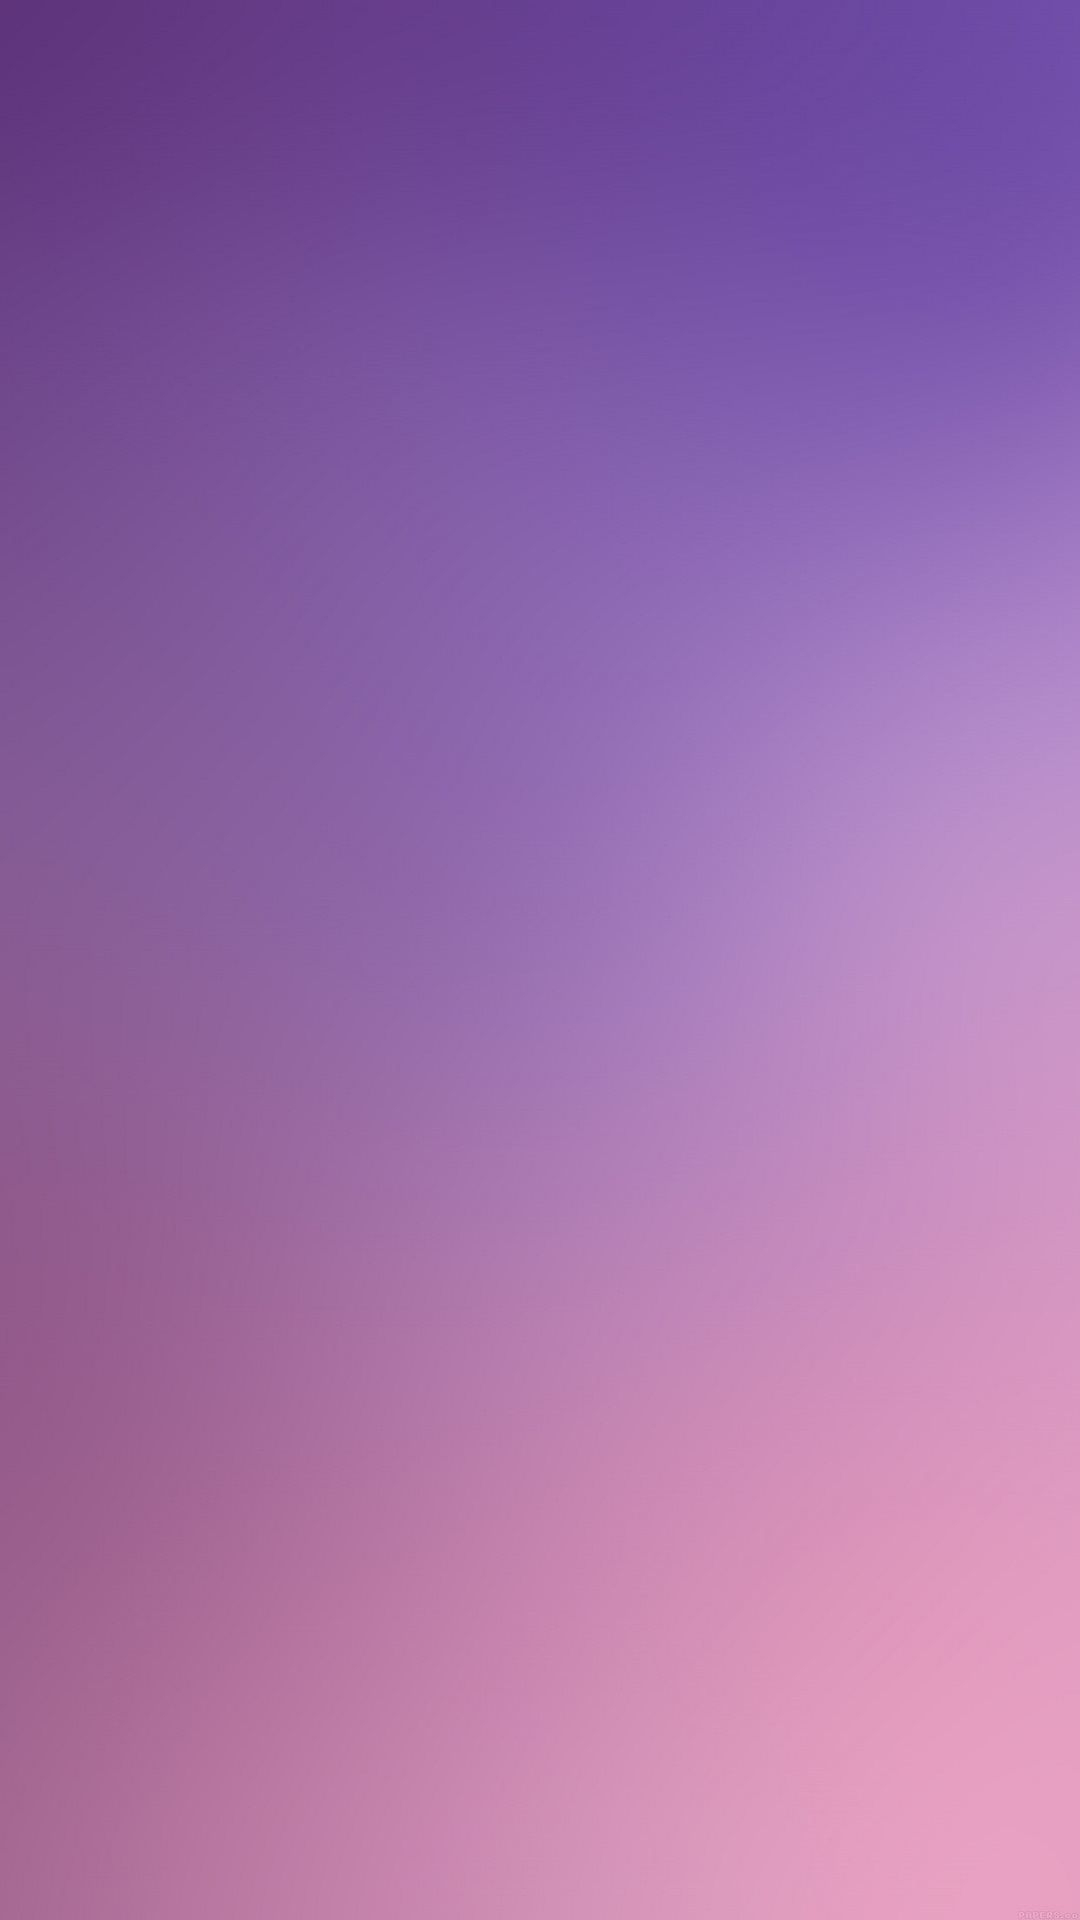 1080x1920 Pin by Eva on w a l l p a p e r s | Purple ombre wallpaper, Ombre wallpaper iphone, Ombre wallpapers